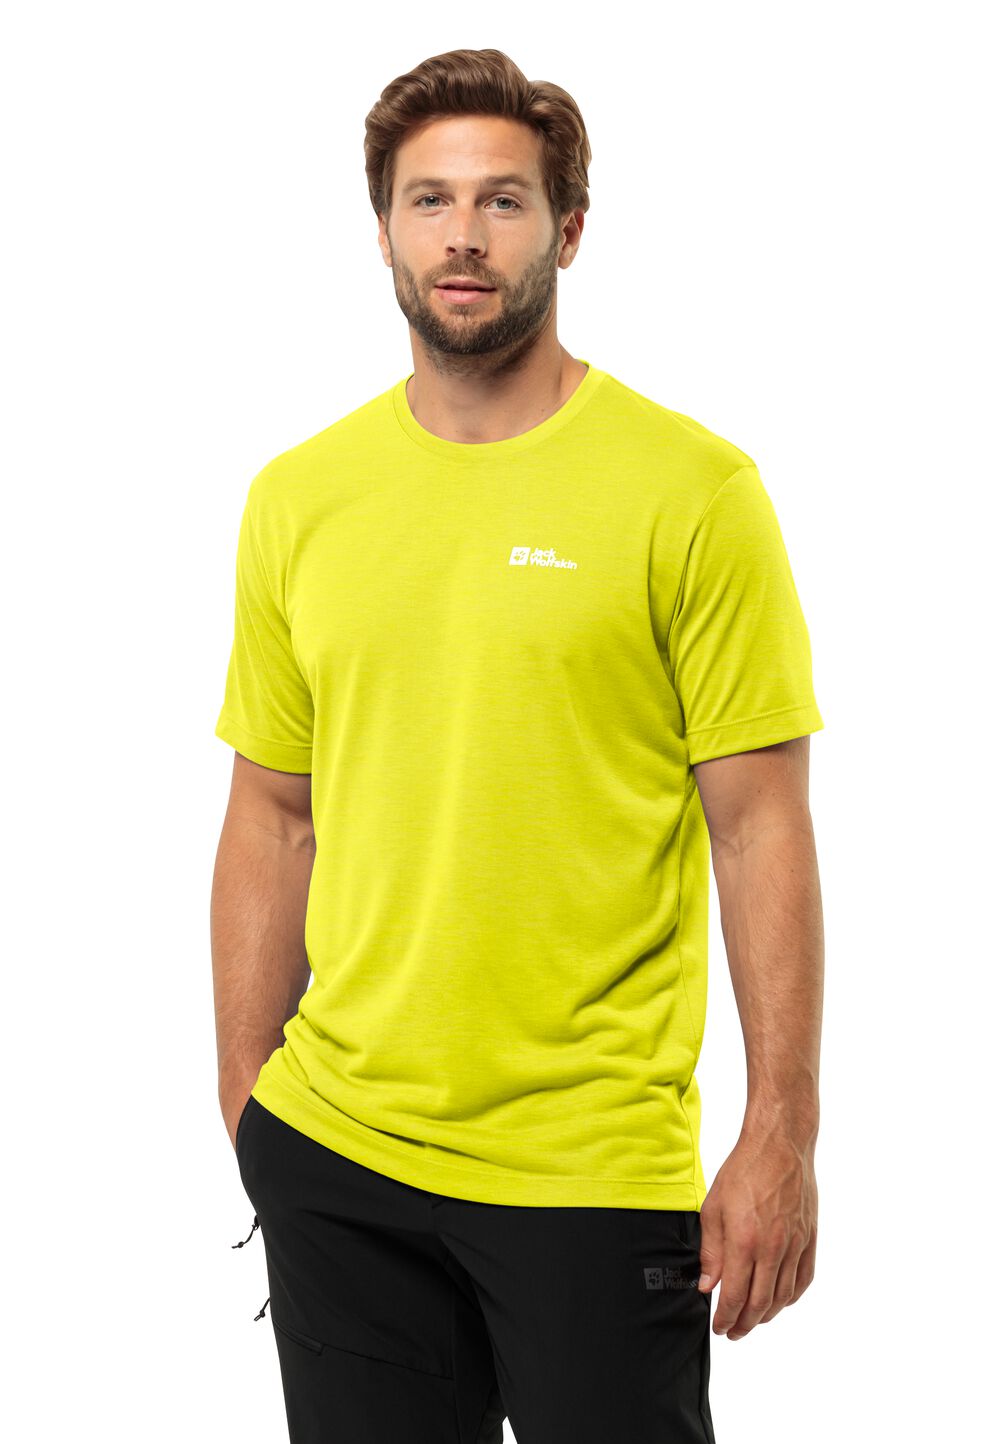 Jack Wolfskin Vonnan S S T-Shirt Men Functioneel shirt Heren XL oranje firefly